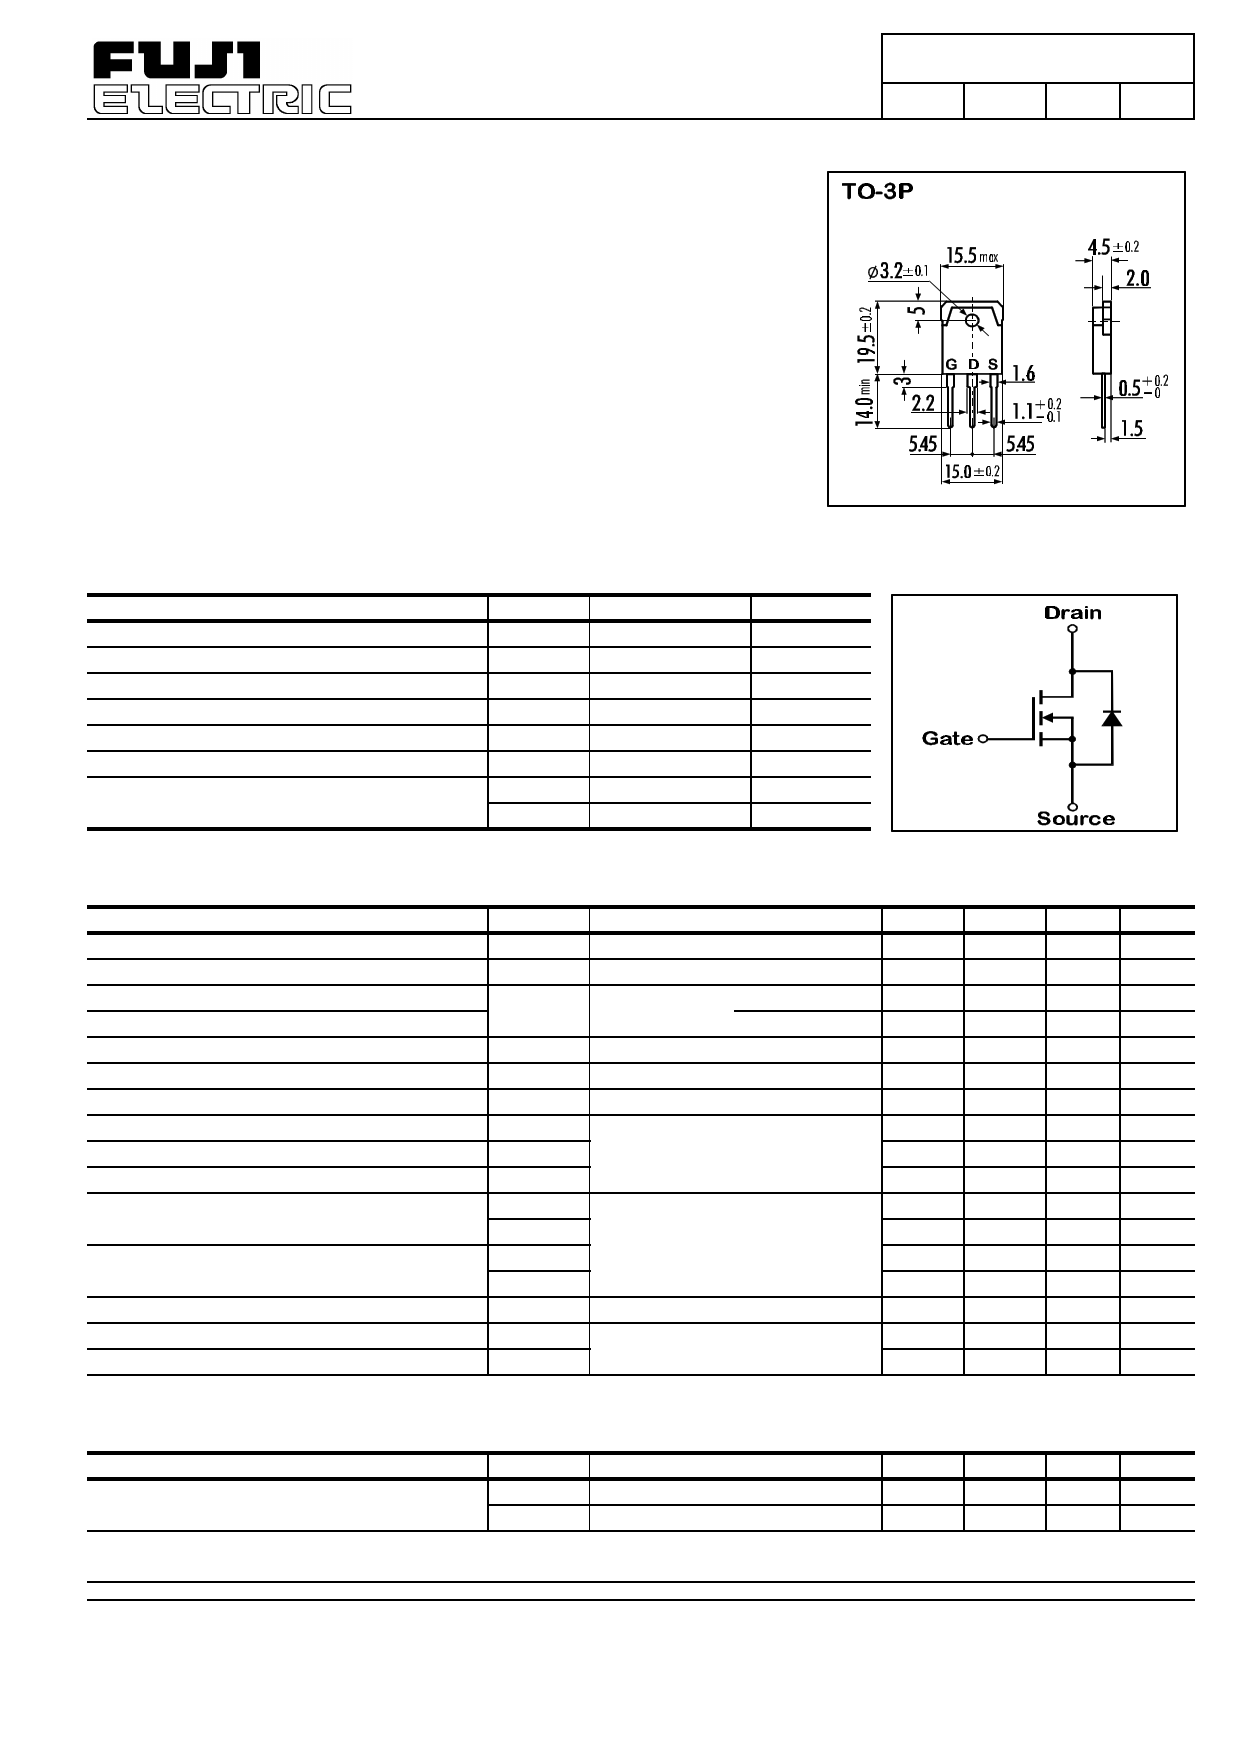 2SK1280 datasheet, circuit